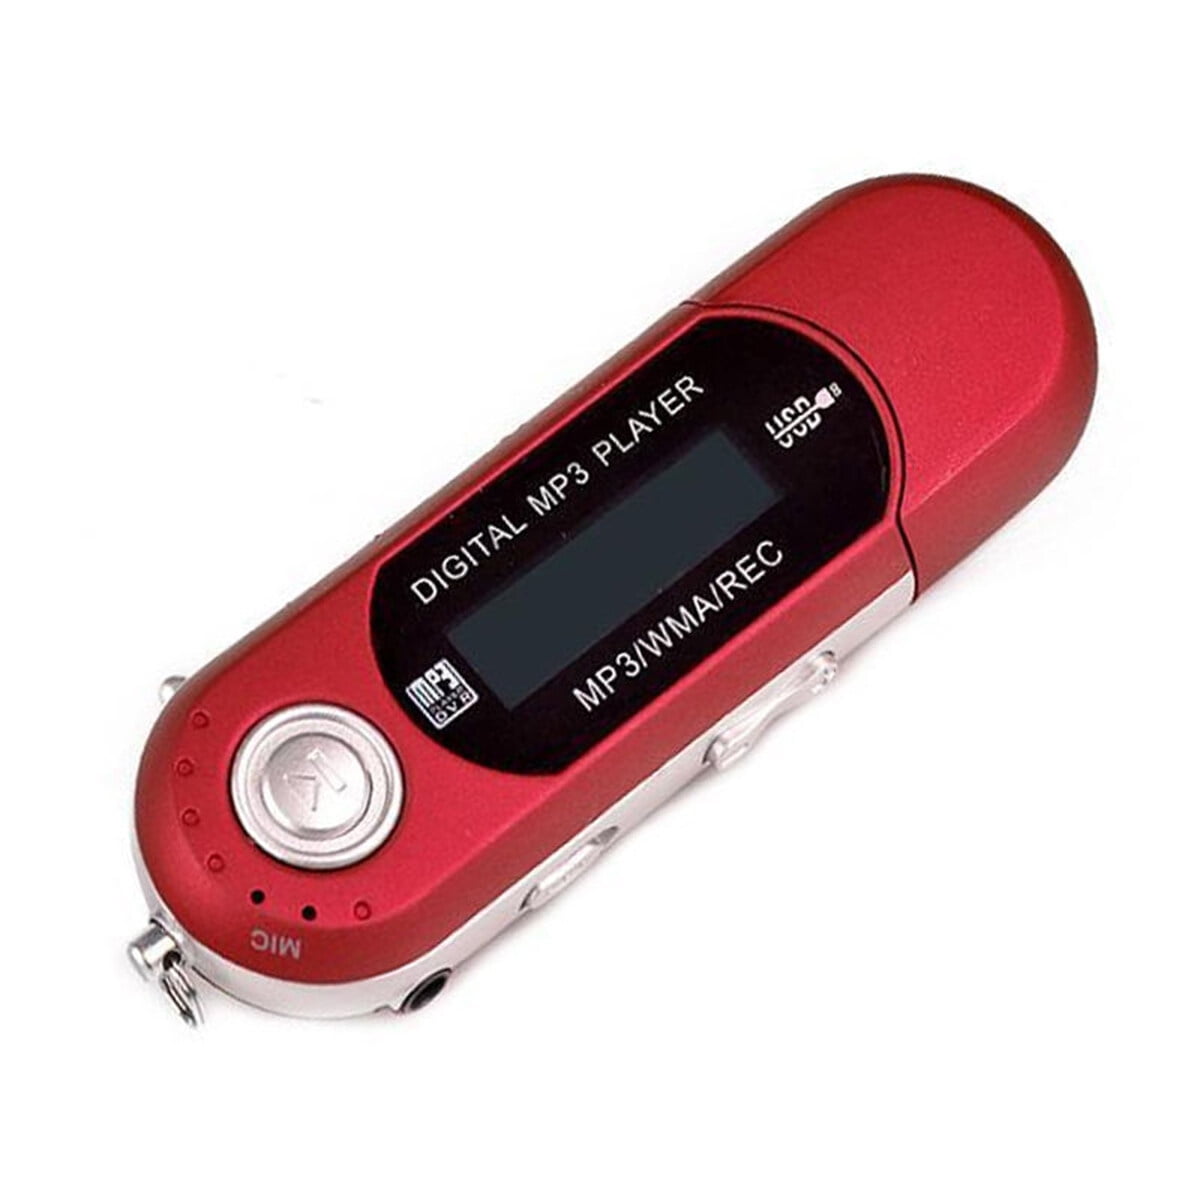 Reproductores digitales MP3 con pantalla digital, portátiles, ideales para  prácticas deportivas y equipados con micrófono, de color rojo Guardung  EL001256-02B